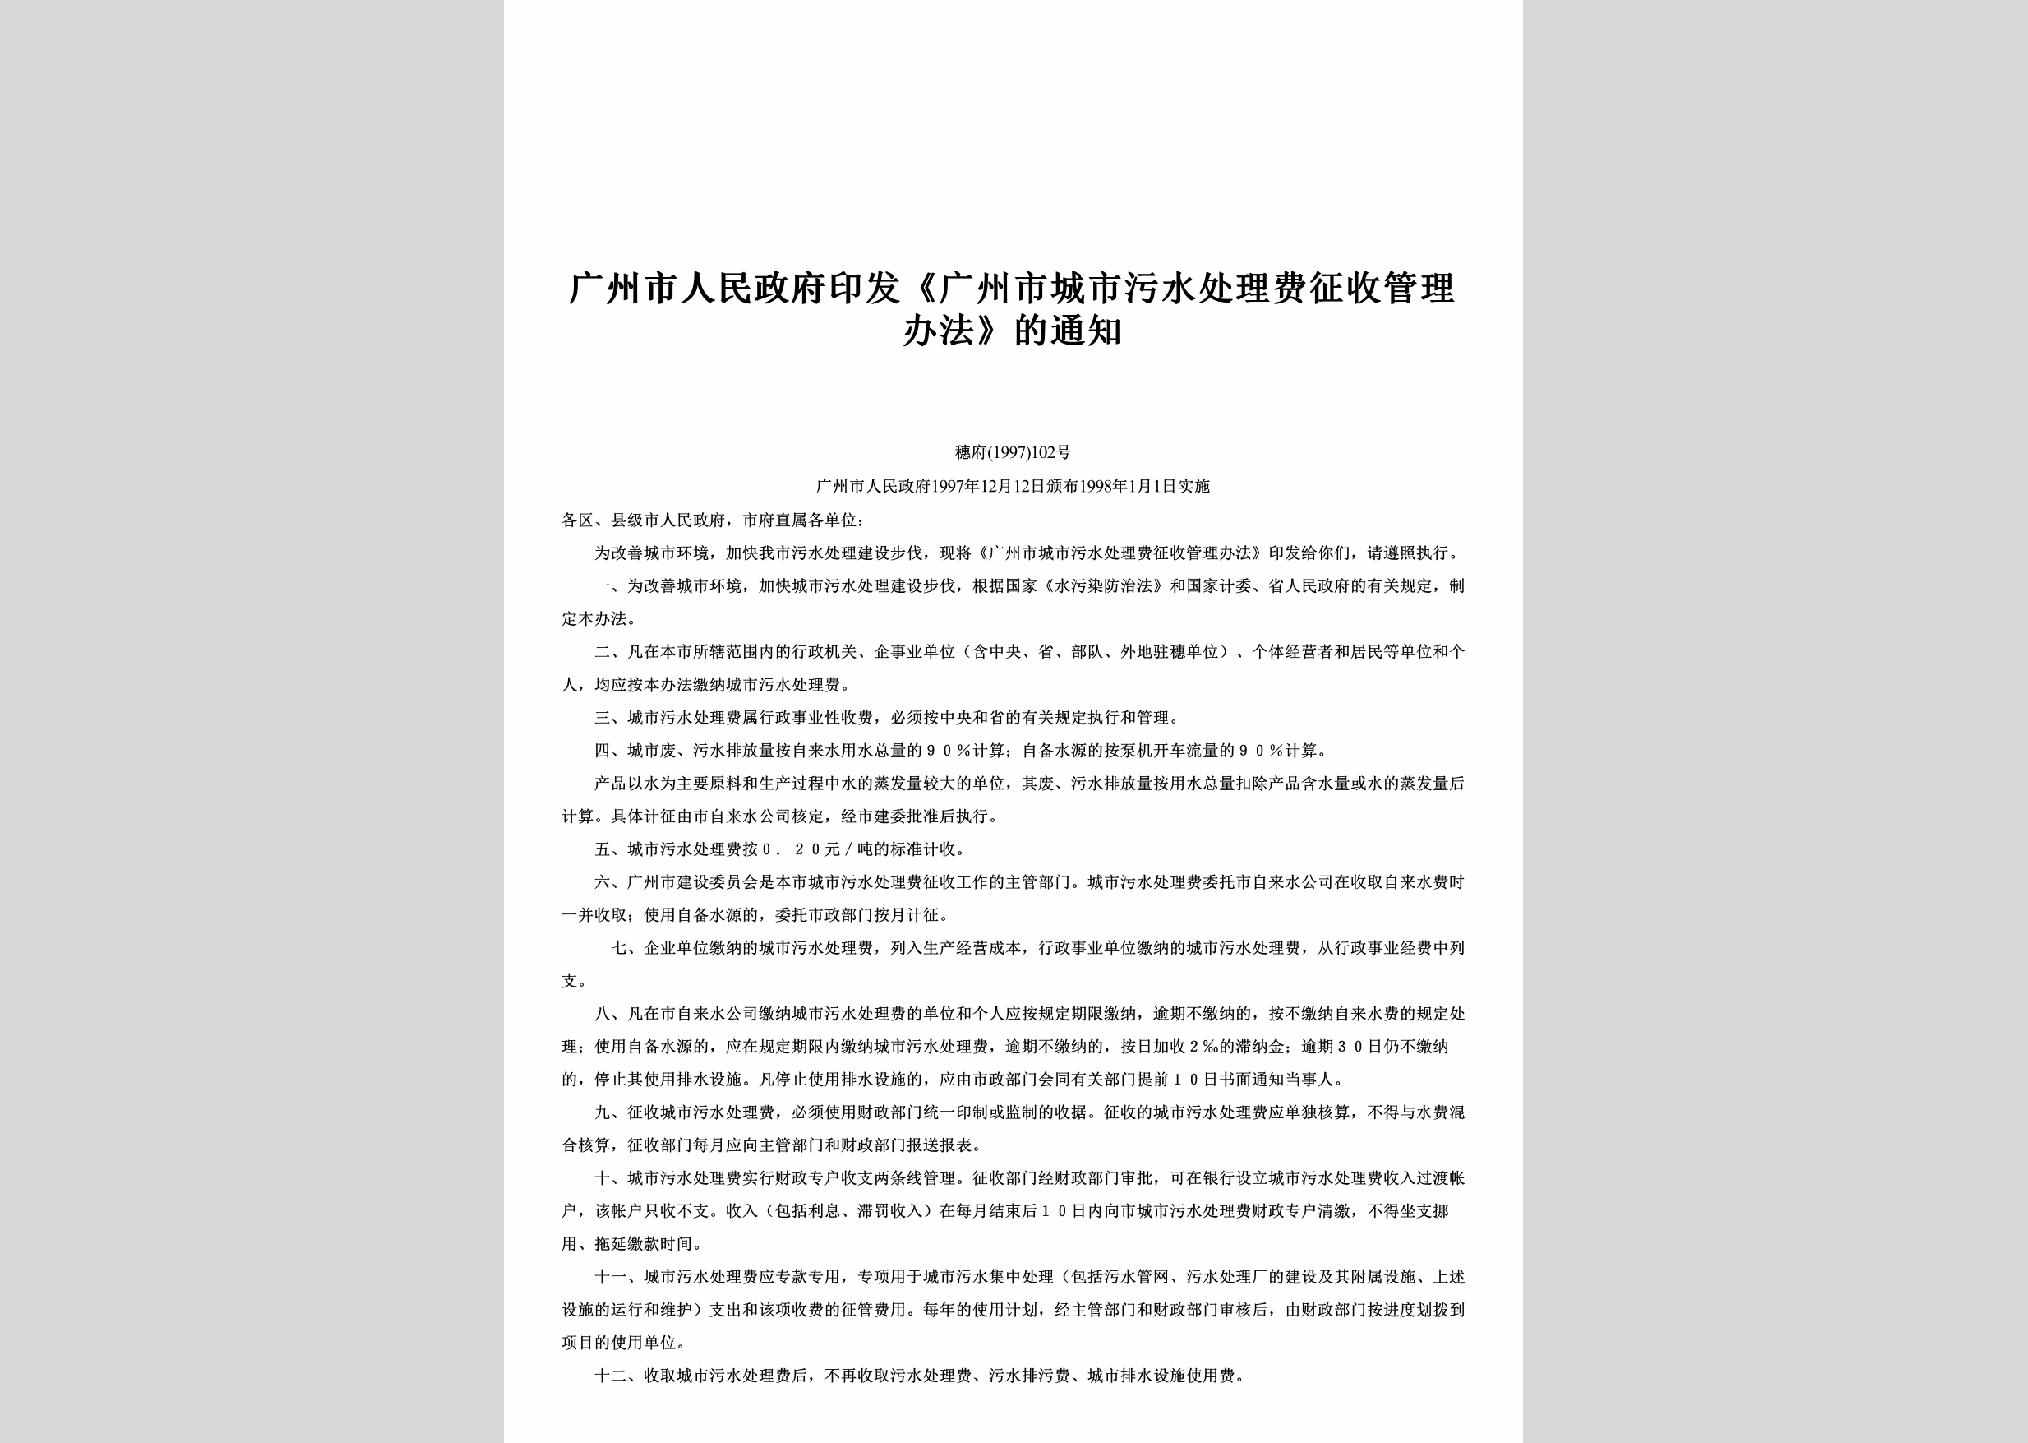 穗府[1997]102号：印发《广州市城市污水处理费征收管理办法》的通知